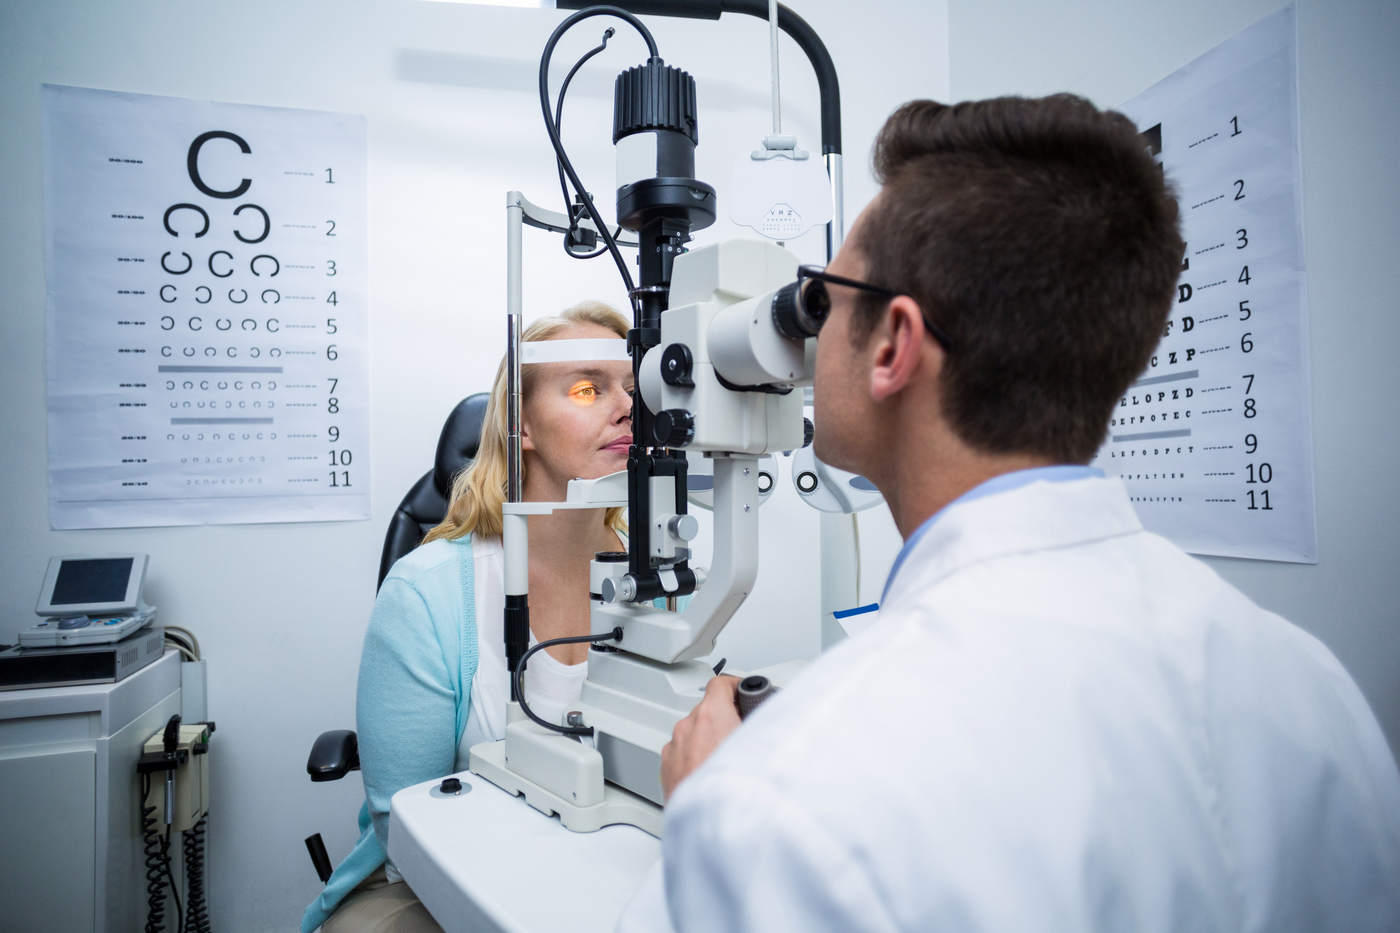 echipamente pentru oftalmologie